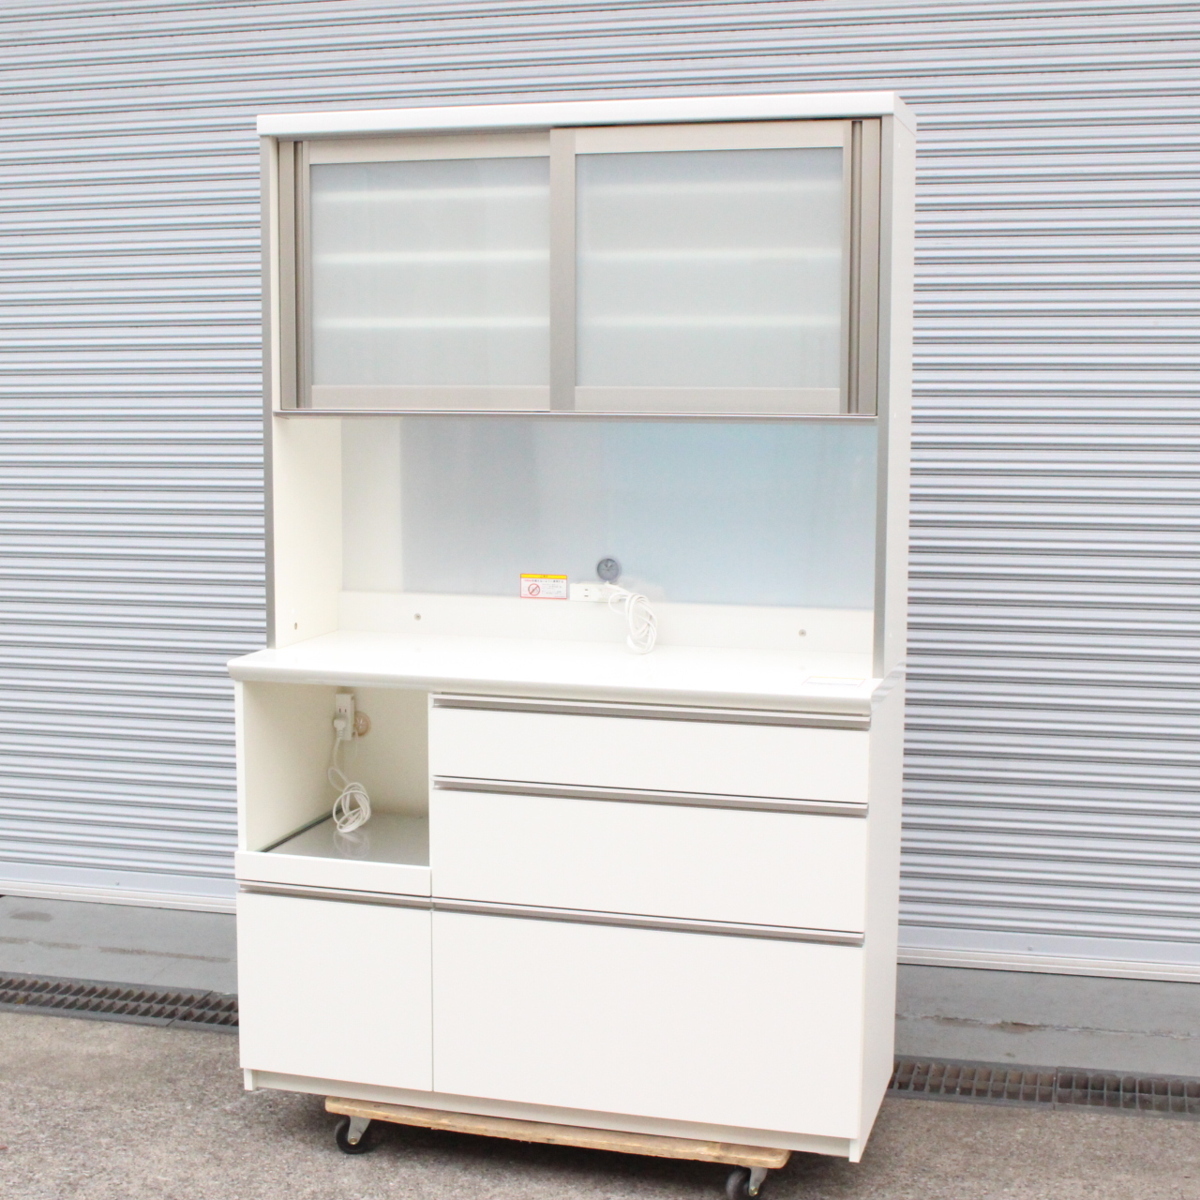 パモウナ 食器棚 LF-1200R 幅120㎝ ワイドビュー設計 家電収納 キッチン 家具